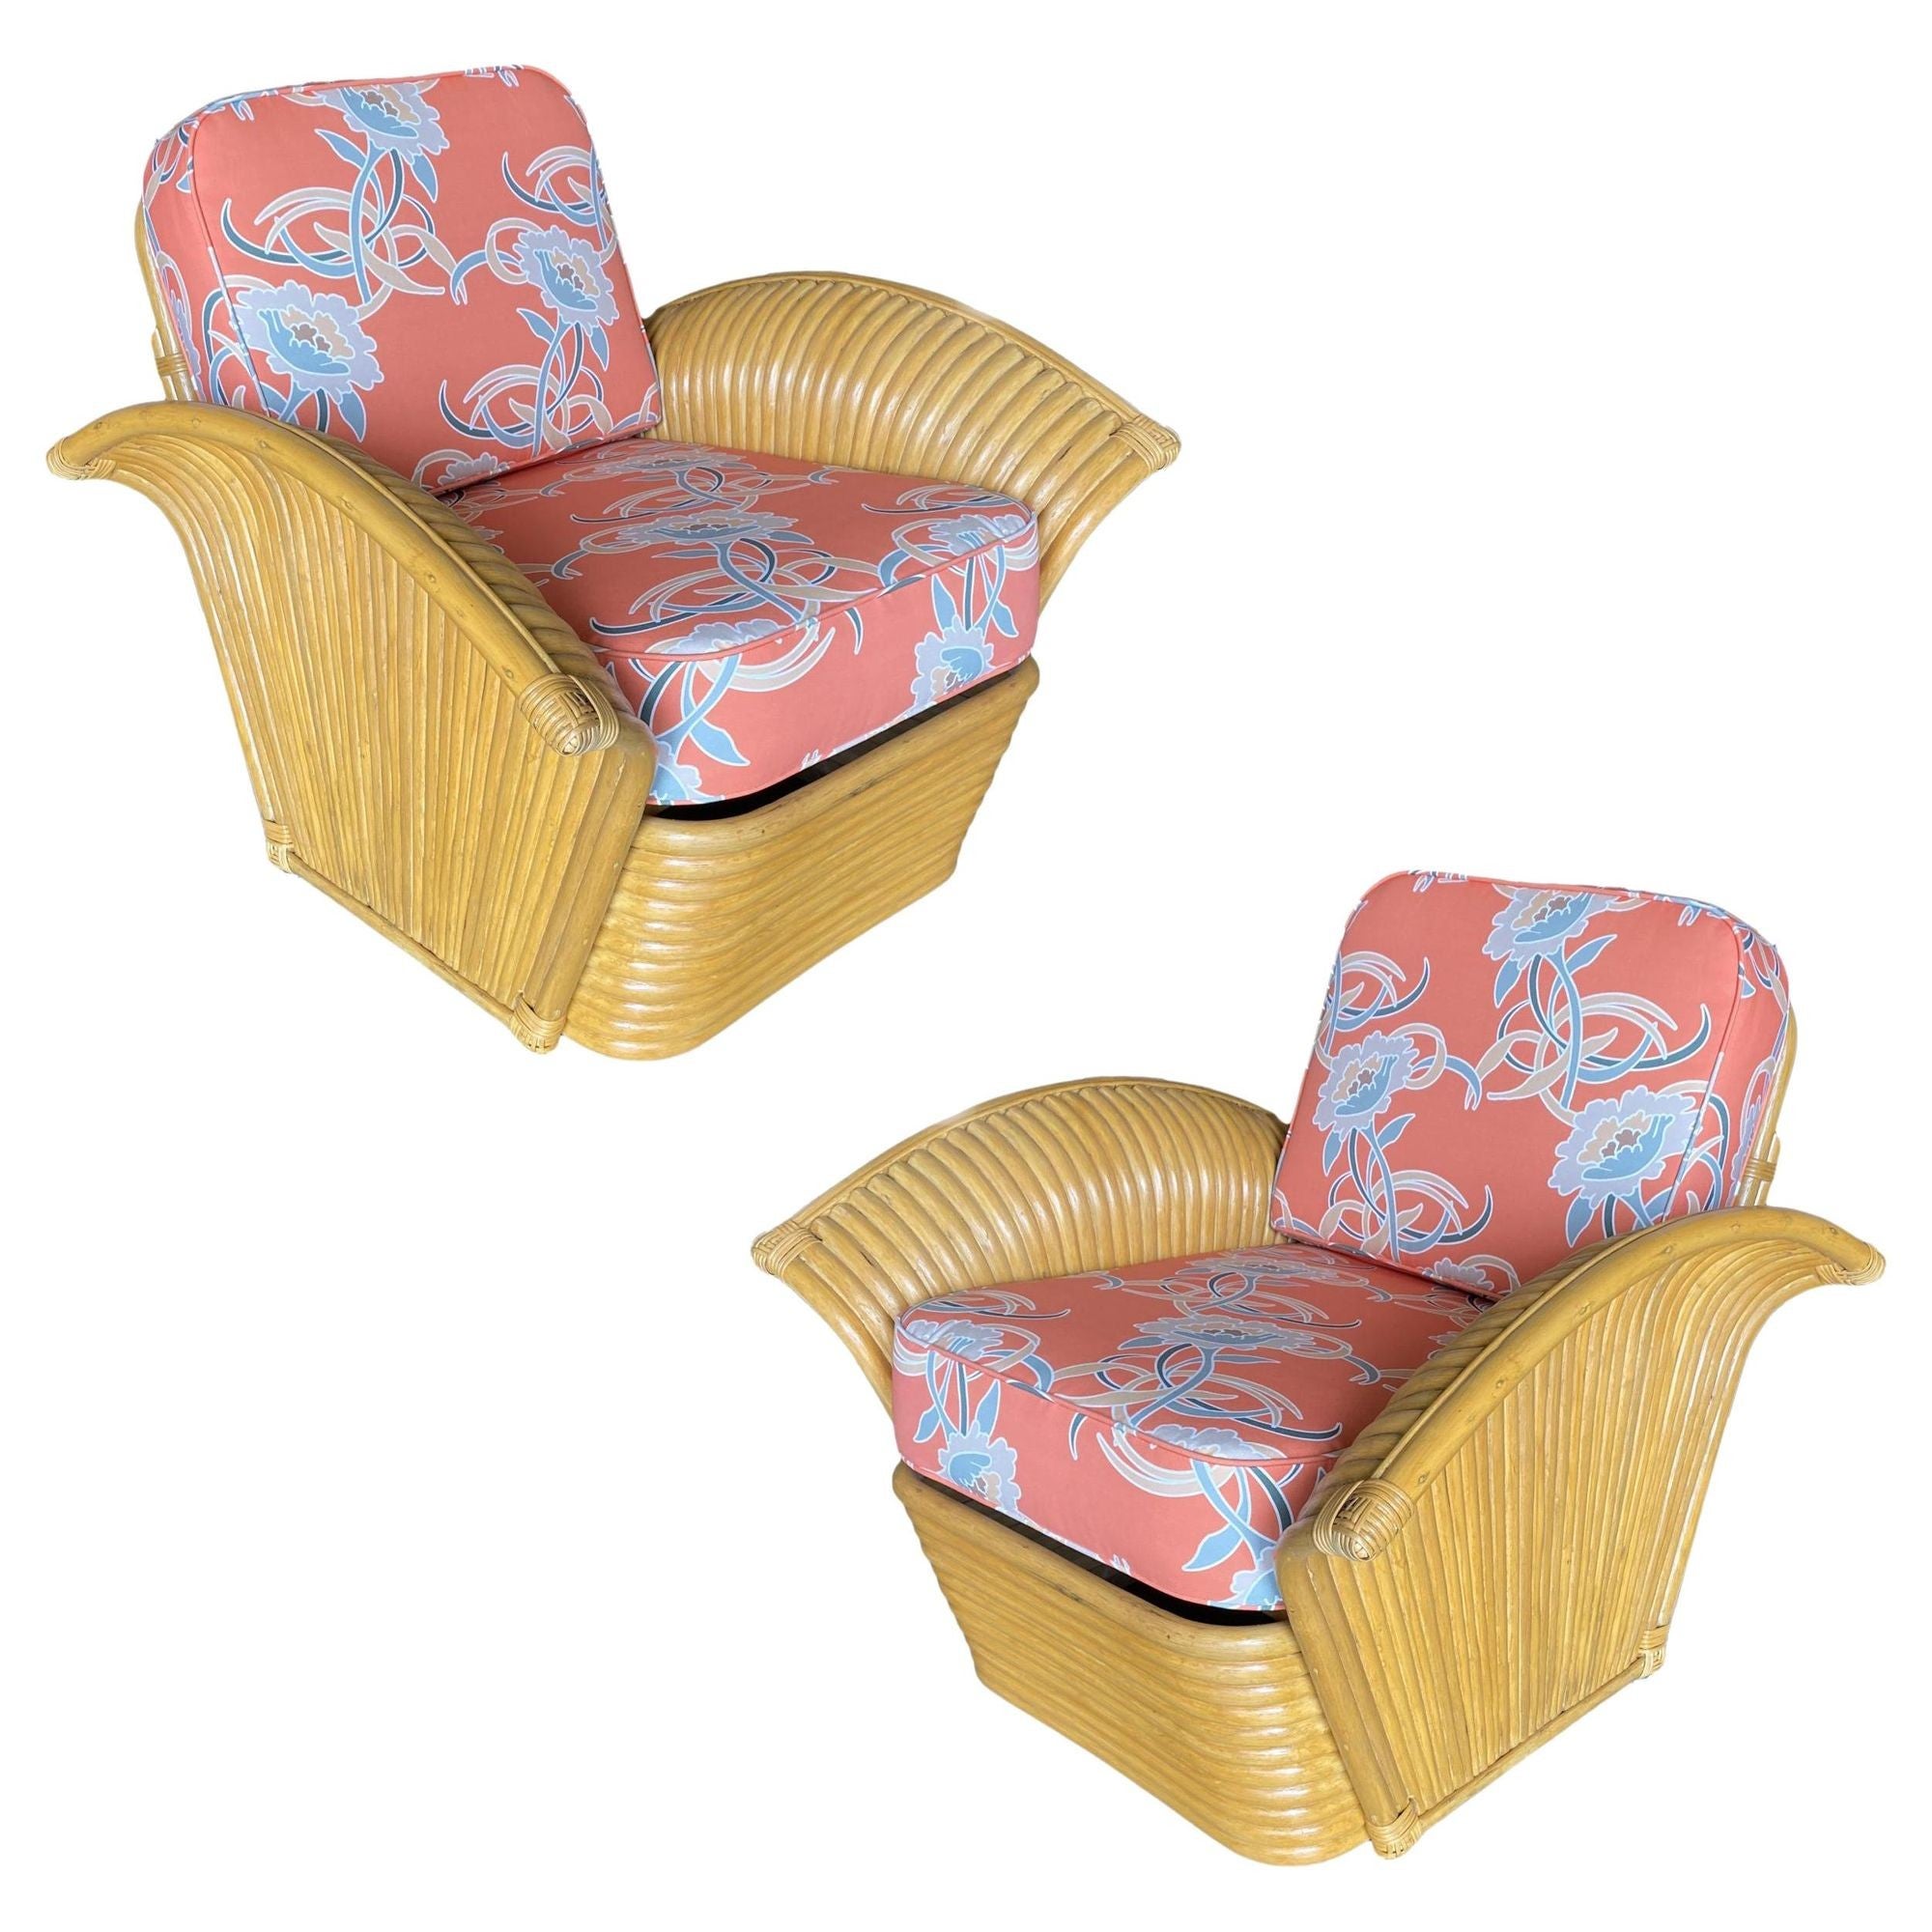 Restored Pair of "Golden Girls" Art Deco Rattan Fan Arm Lounge Chair Pair